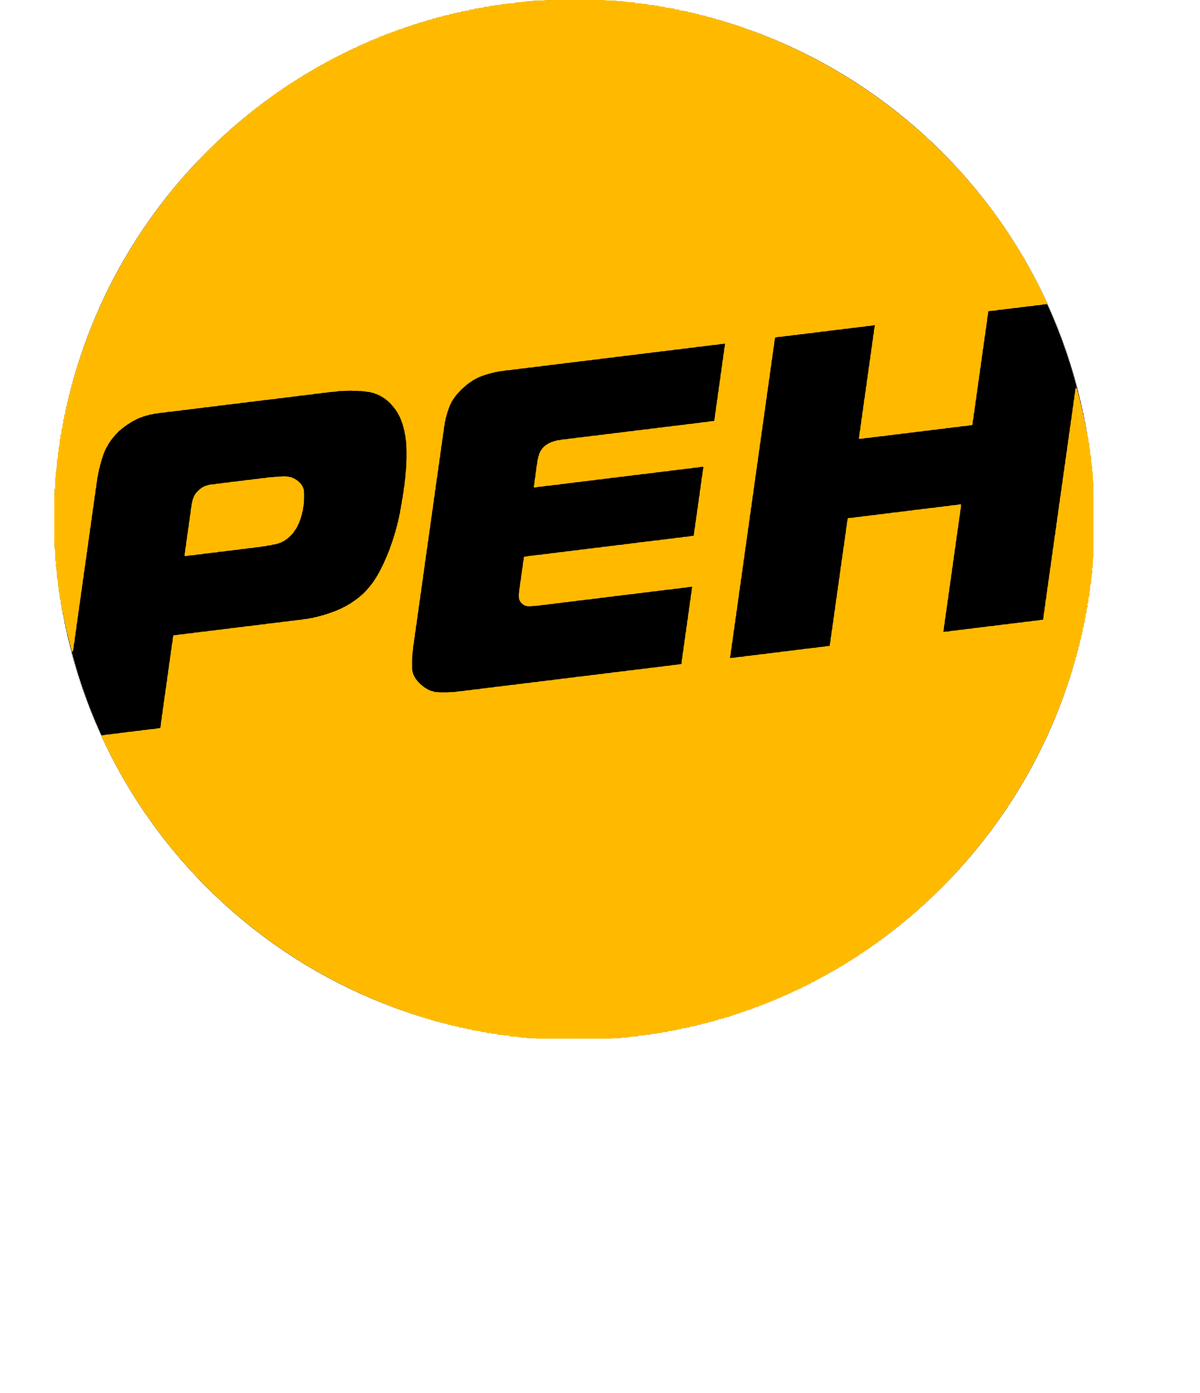 РЕН ТВ. РЕН ТВ 2010. РЕН ТВ логотип. Логотип РЕН ТВ 2010-2011.